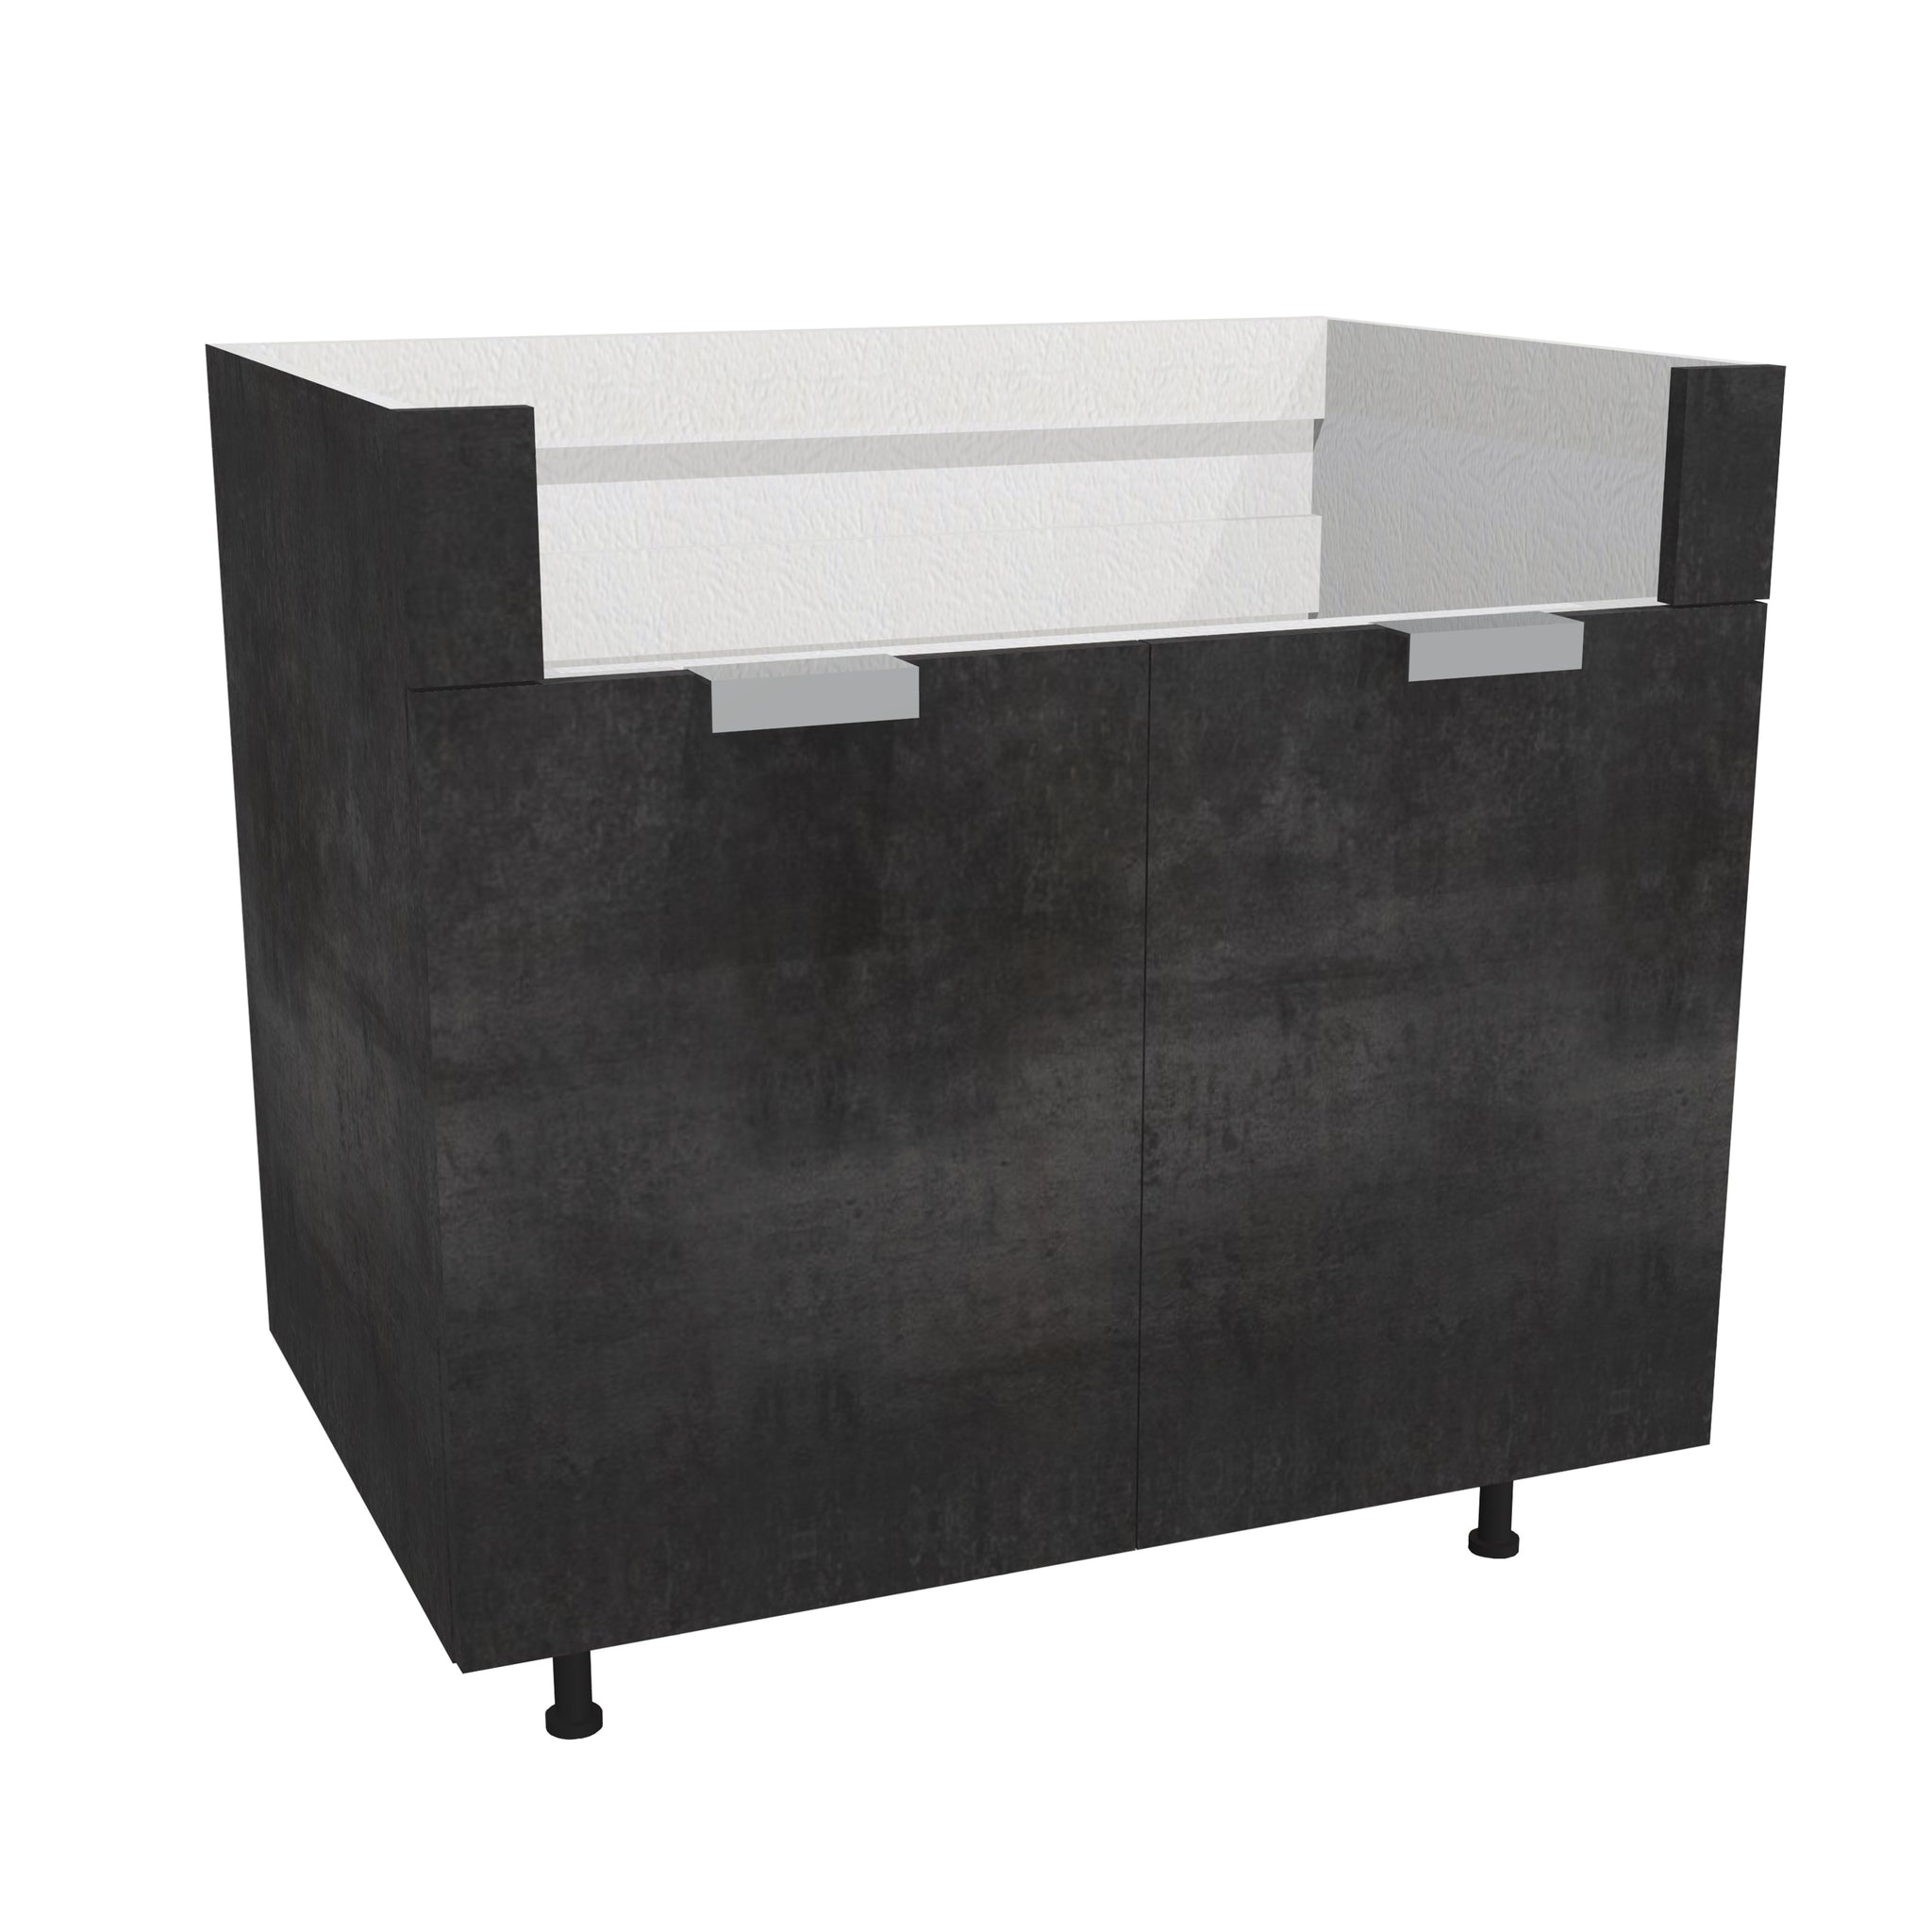 RTA - Rustic Grey - Farm Sink Base Cabinet | 30"W x 34.5"H x 24"D